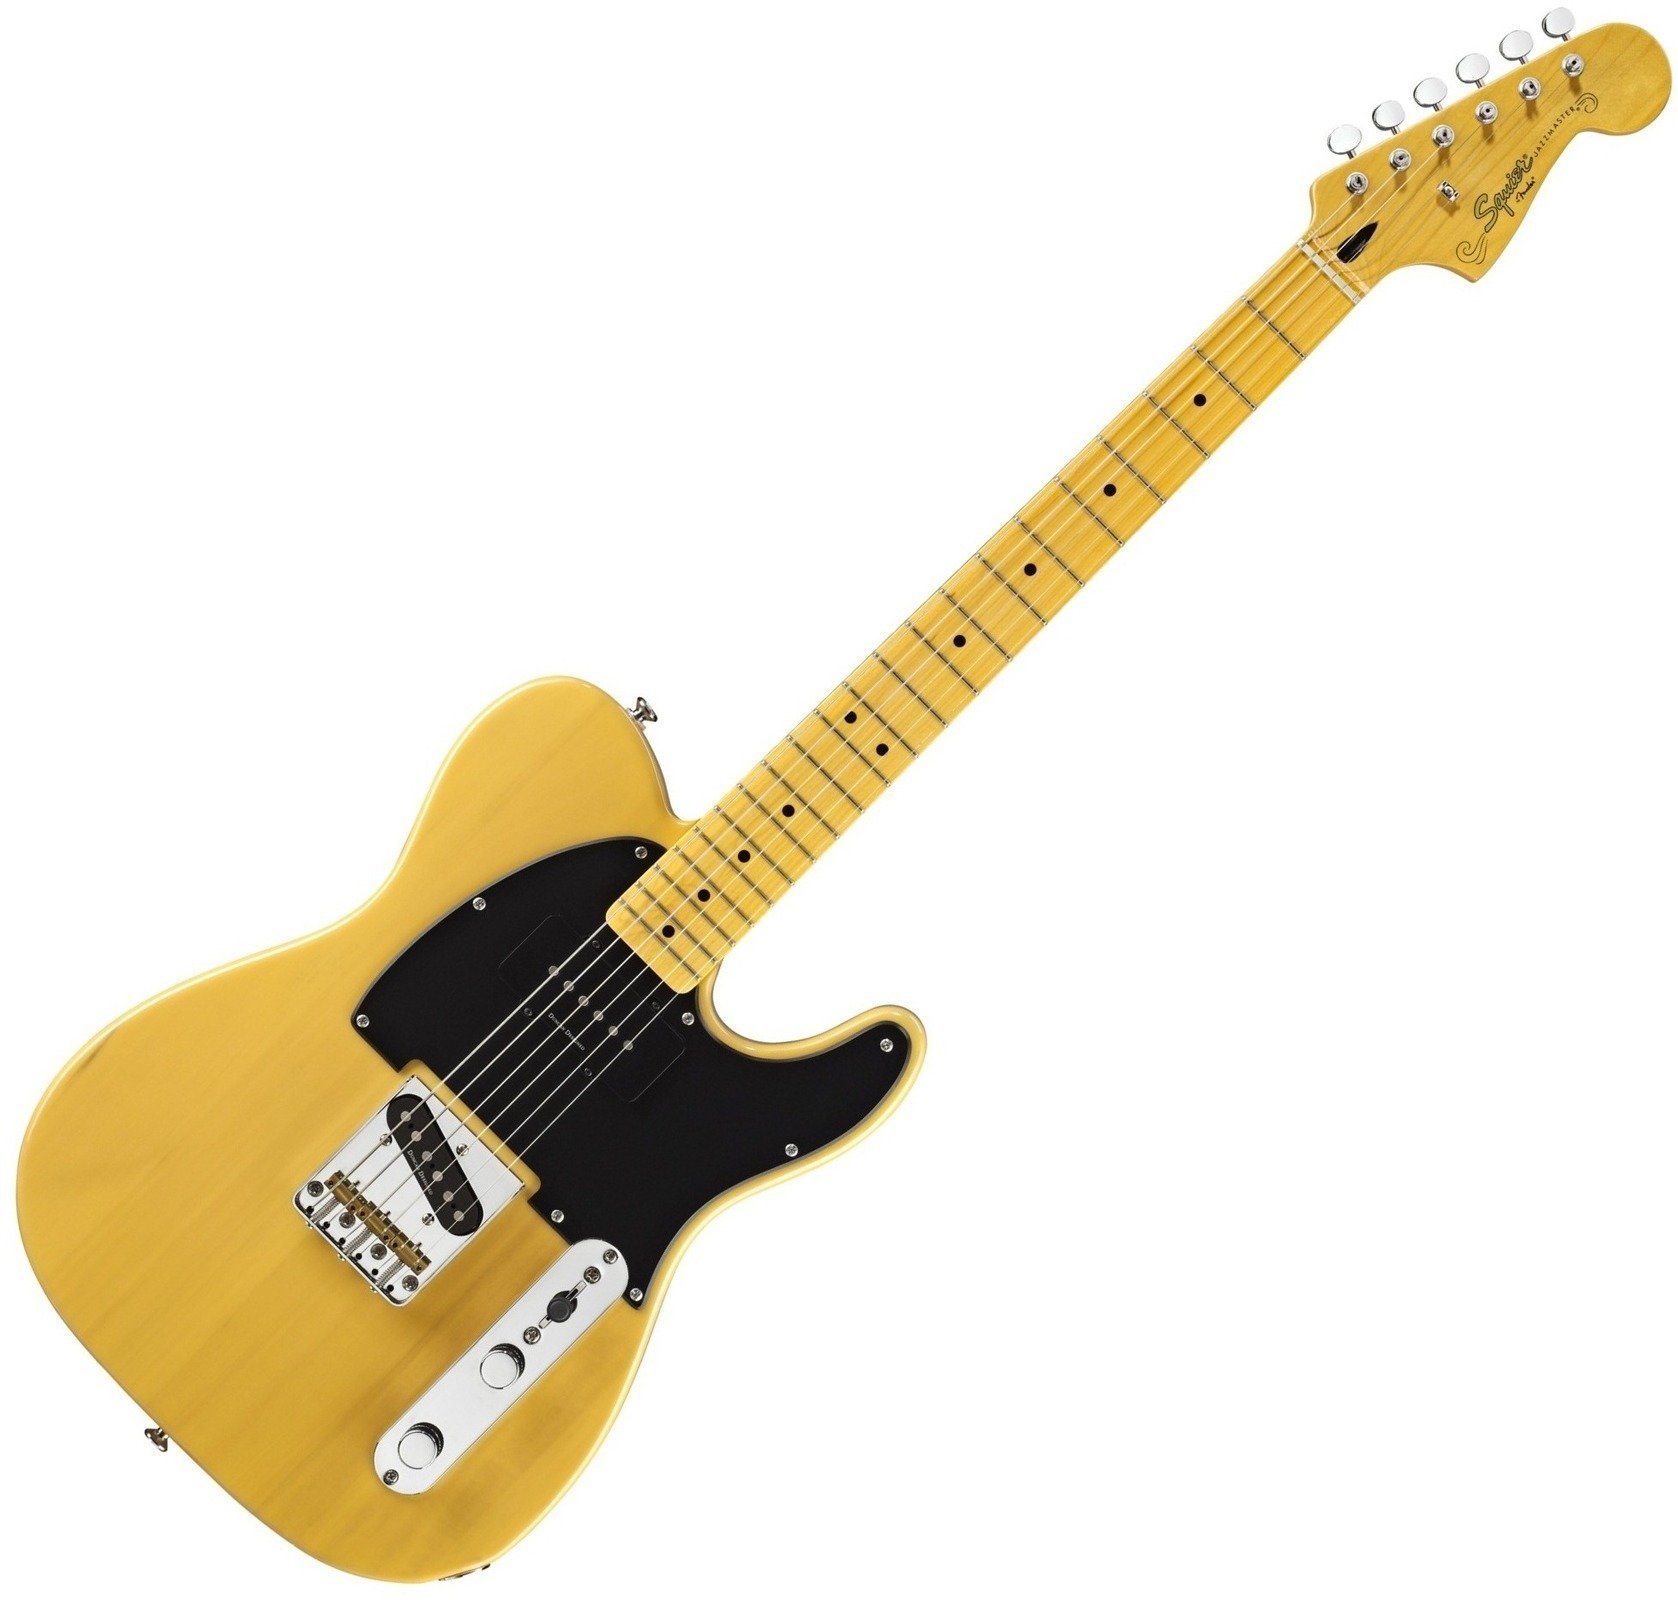 Elektrische gitaar Fender Squier Vintage Modified Telecaster Special White Blonde